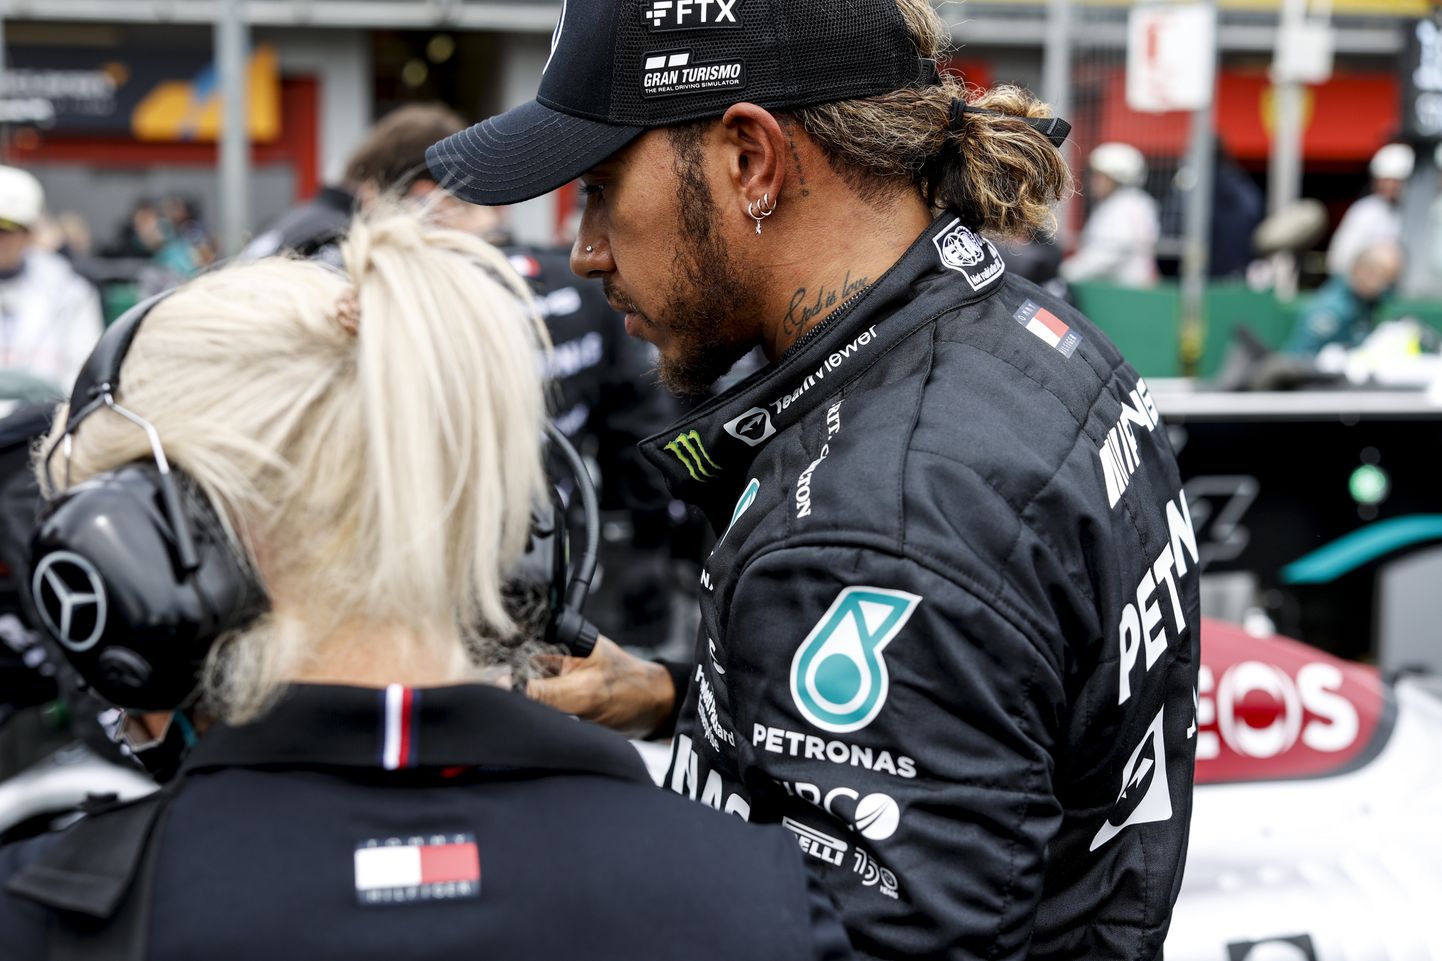 Lewis Hamiltoni hooaeg on läinud üle kivide ja kändude ning seni pole paranemismärke näha.